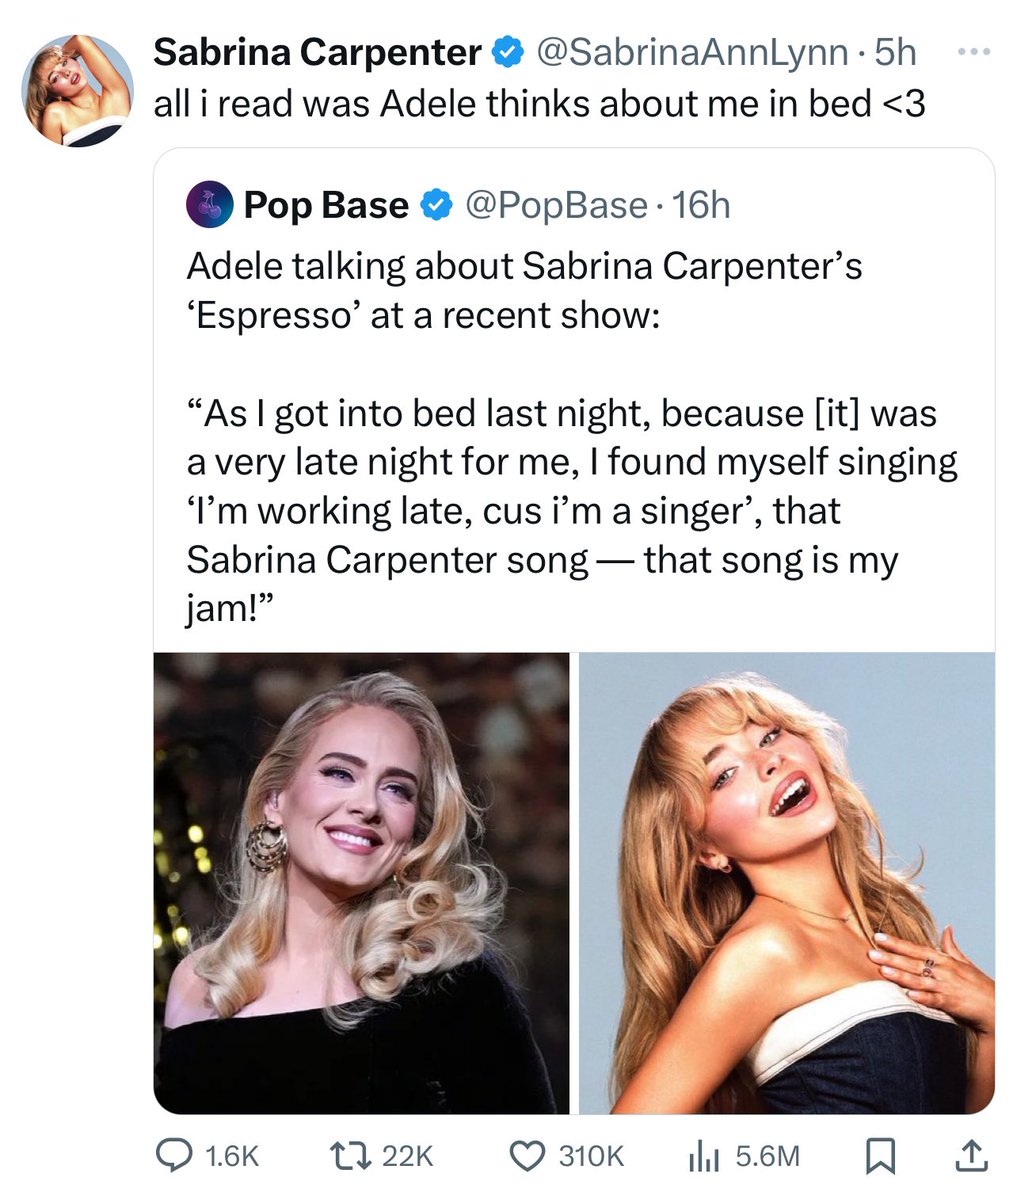 Sabrina Carpenter ตลกอีกแล้ว ล่าสุด Adele บอกว่าเธอเผลอร้องเพลง Espresso ก่อนนอนเพราะชอบเพลงนี้มาก ซาบริน่ามาตอบว่า “จับใจความได้แค่ว่า Adele คิดถึงฉันตอนอยู่บนเตียงด้วยอ่าาา <3”